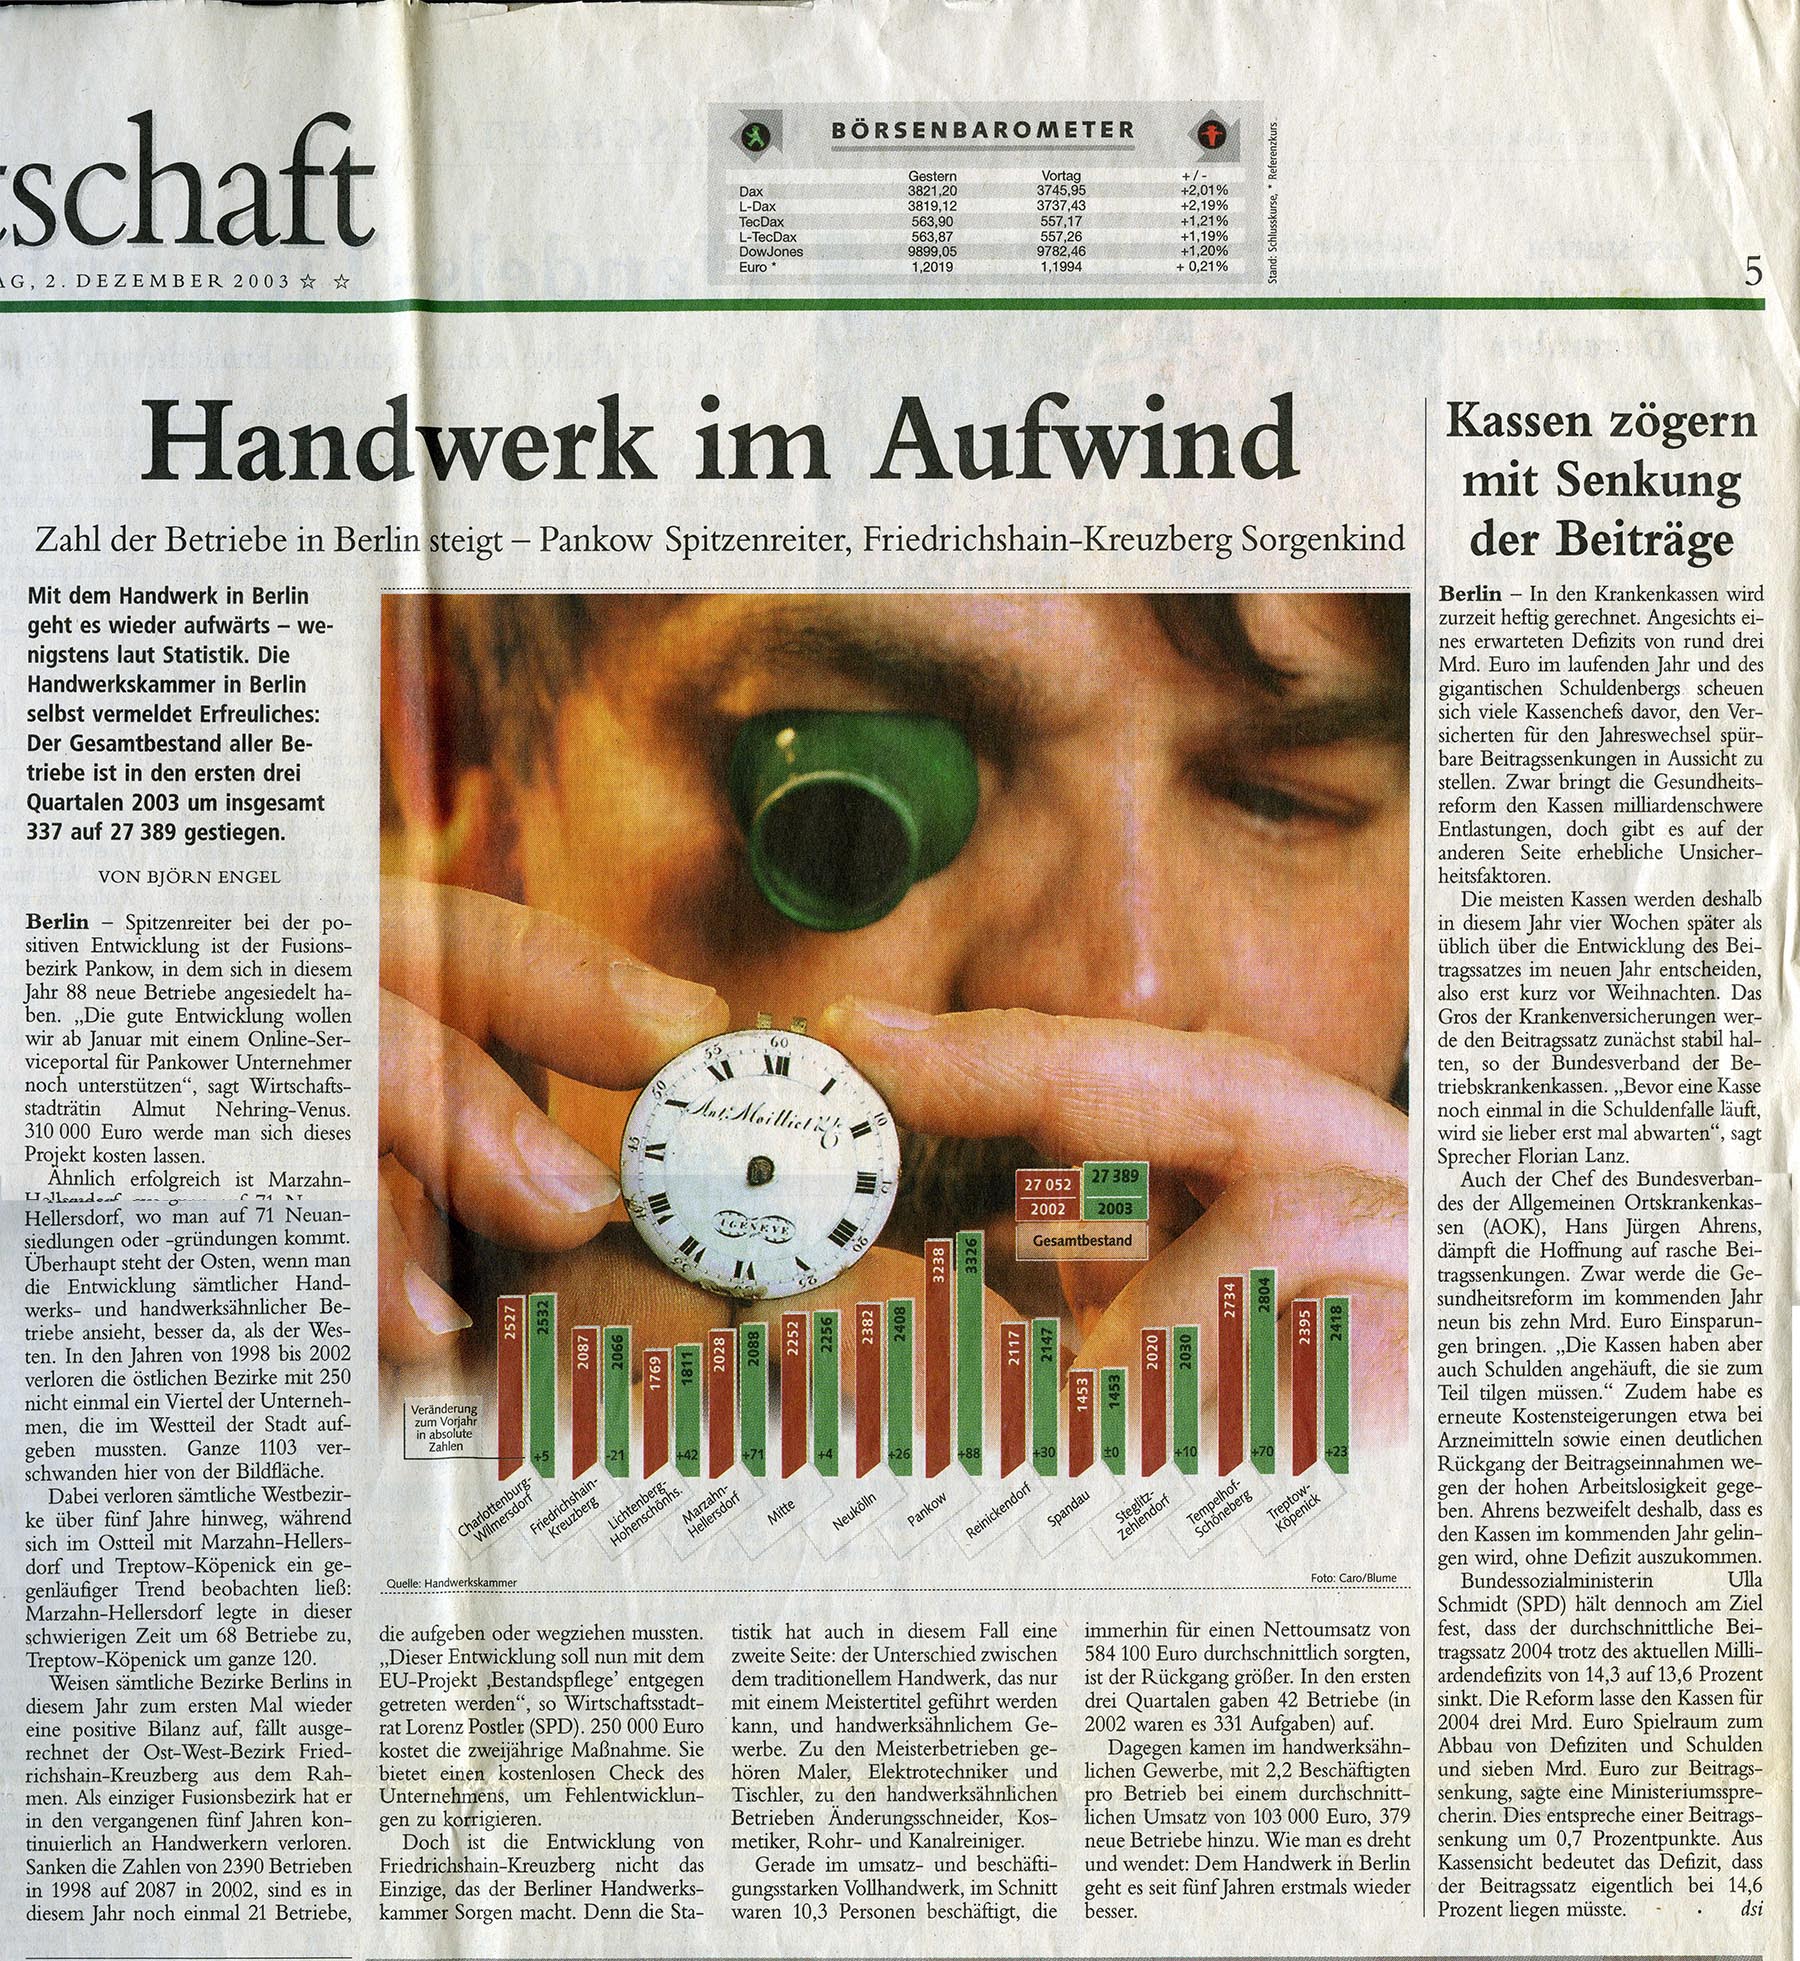 Handwerk im Aufwind - Zahl der Betriebe in Berlin steigt, Berliner Morgenpost, Handwerk, Dienstag, 2. Dezember 2002, S. 5